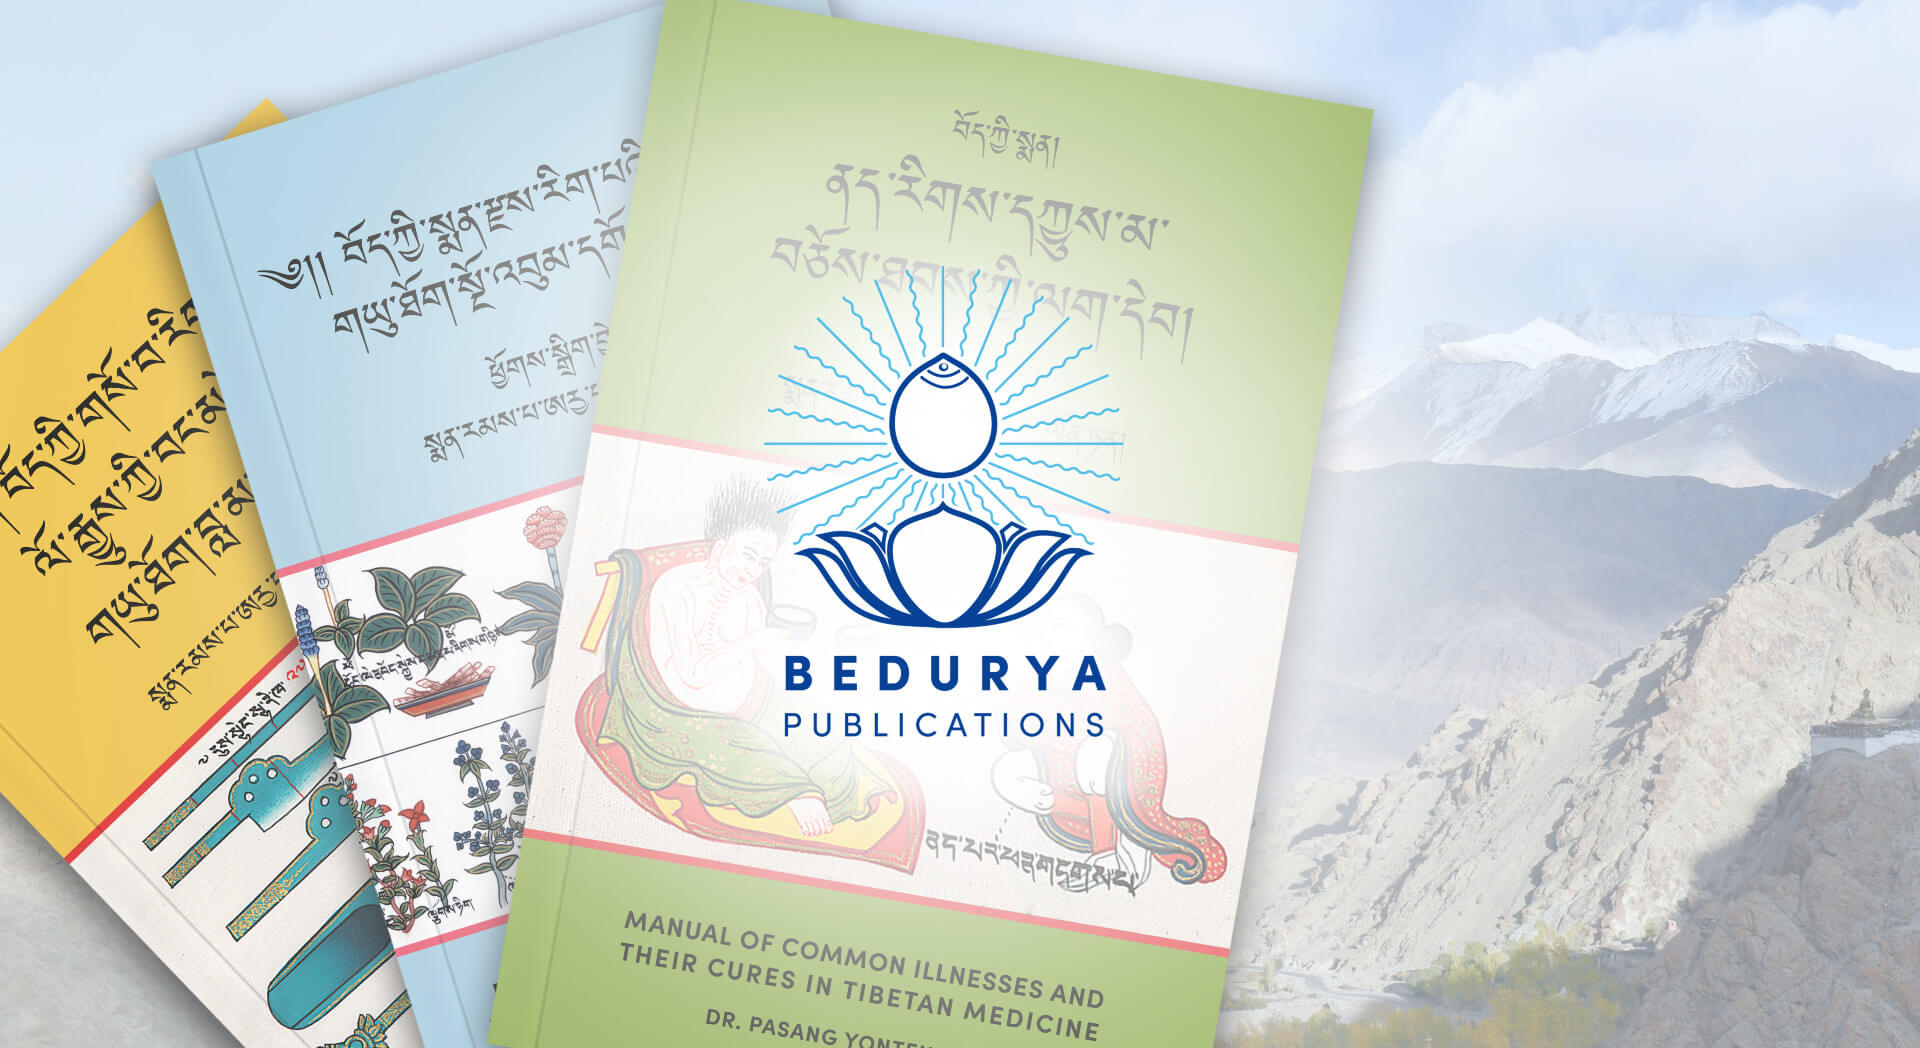 reprints bundle image with bedurya logo